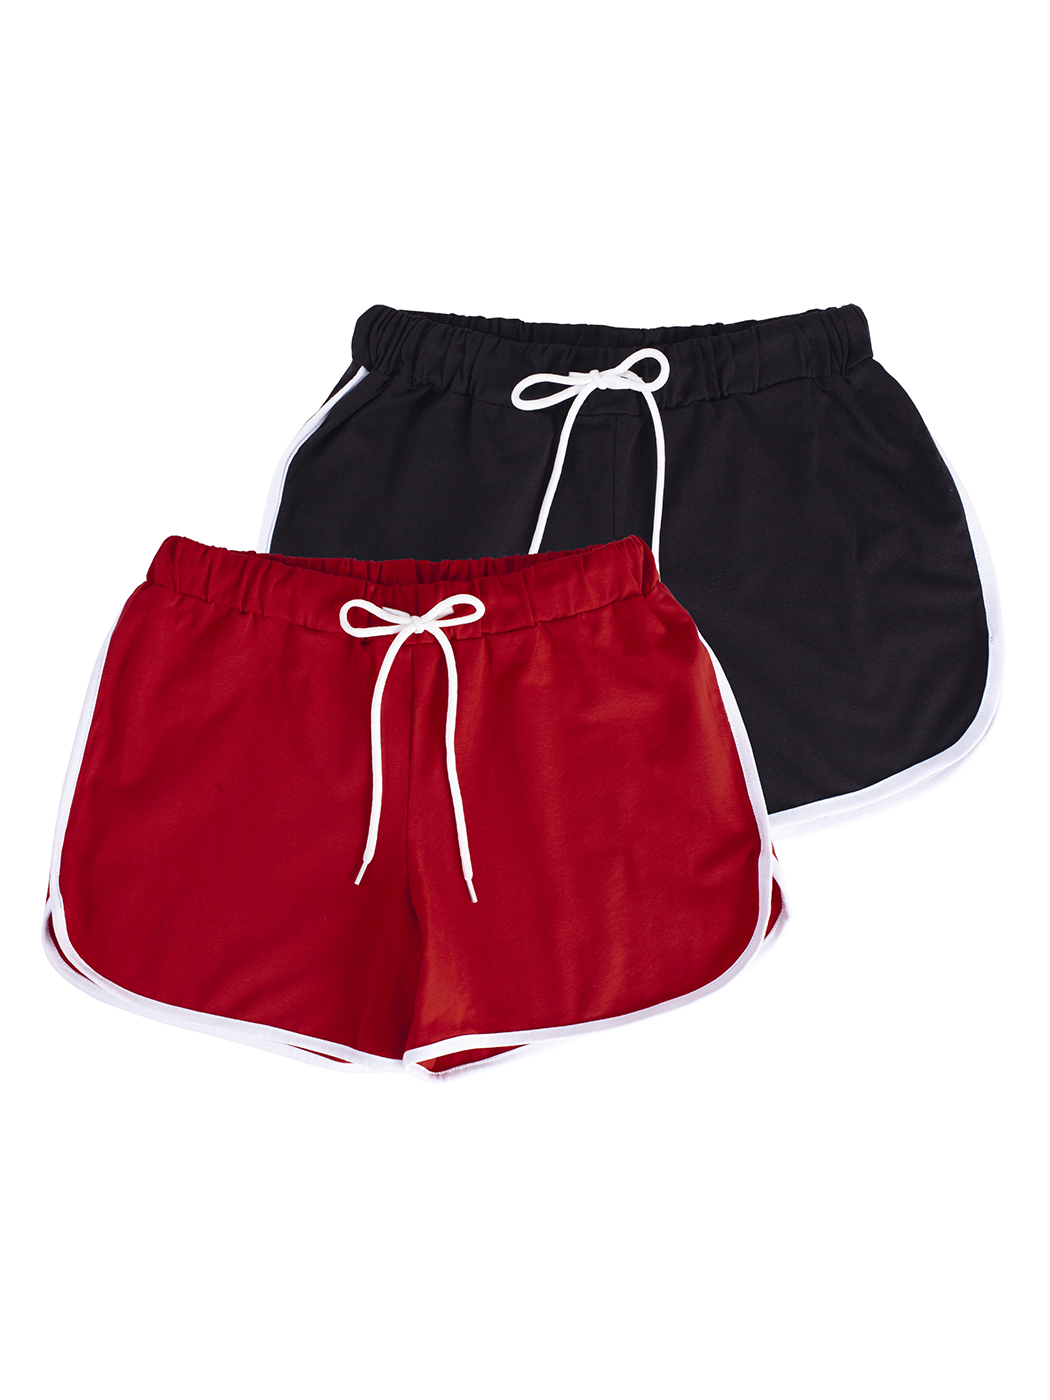 Cпортивные шорты женские Lunarable ksrt002-2_ красные L